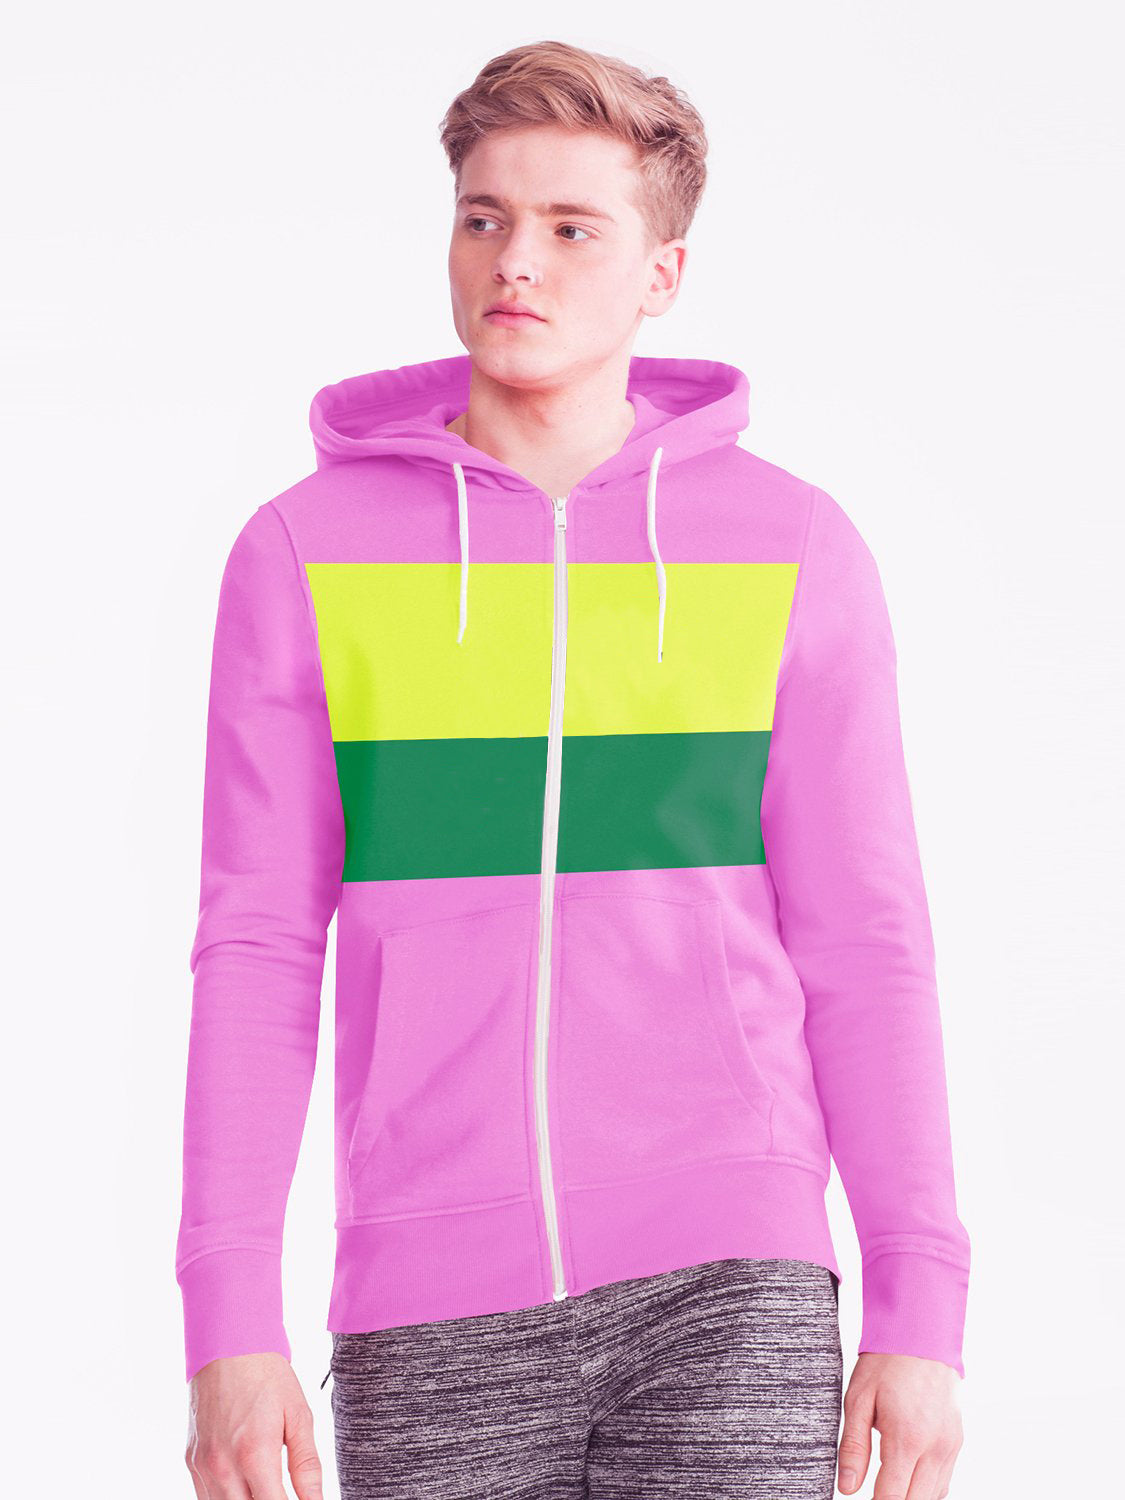 Next Fleece Zipper Hoodie For Men-Pink with Panels-SP494